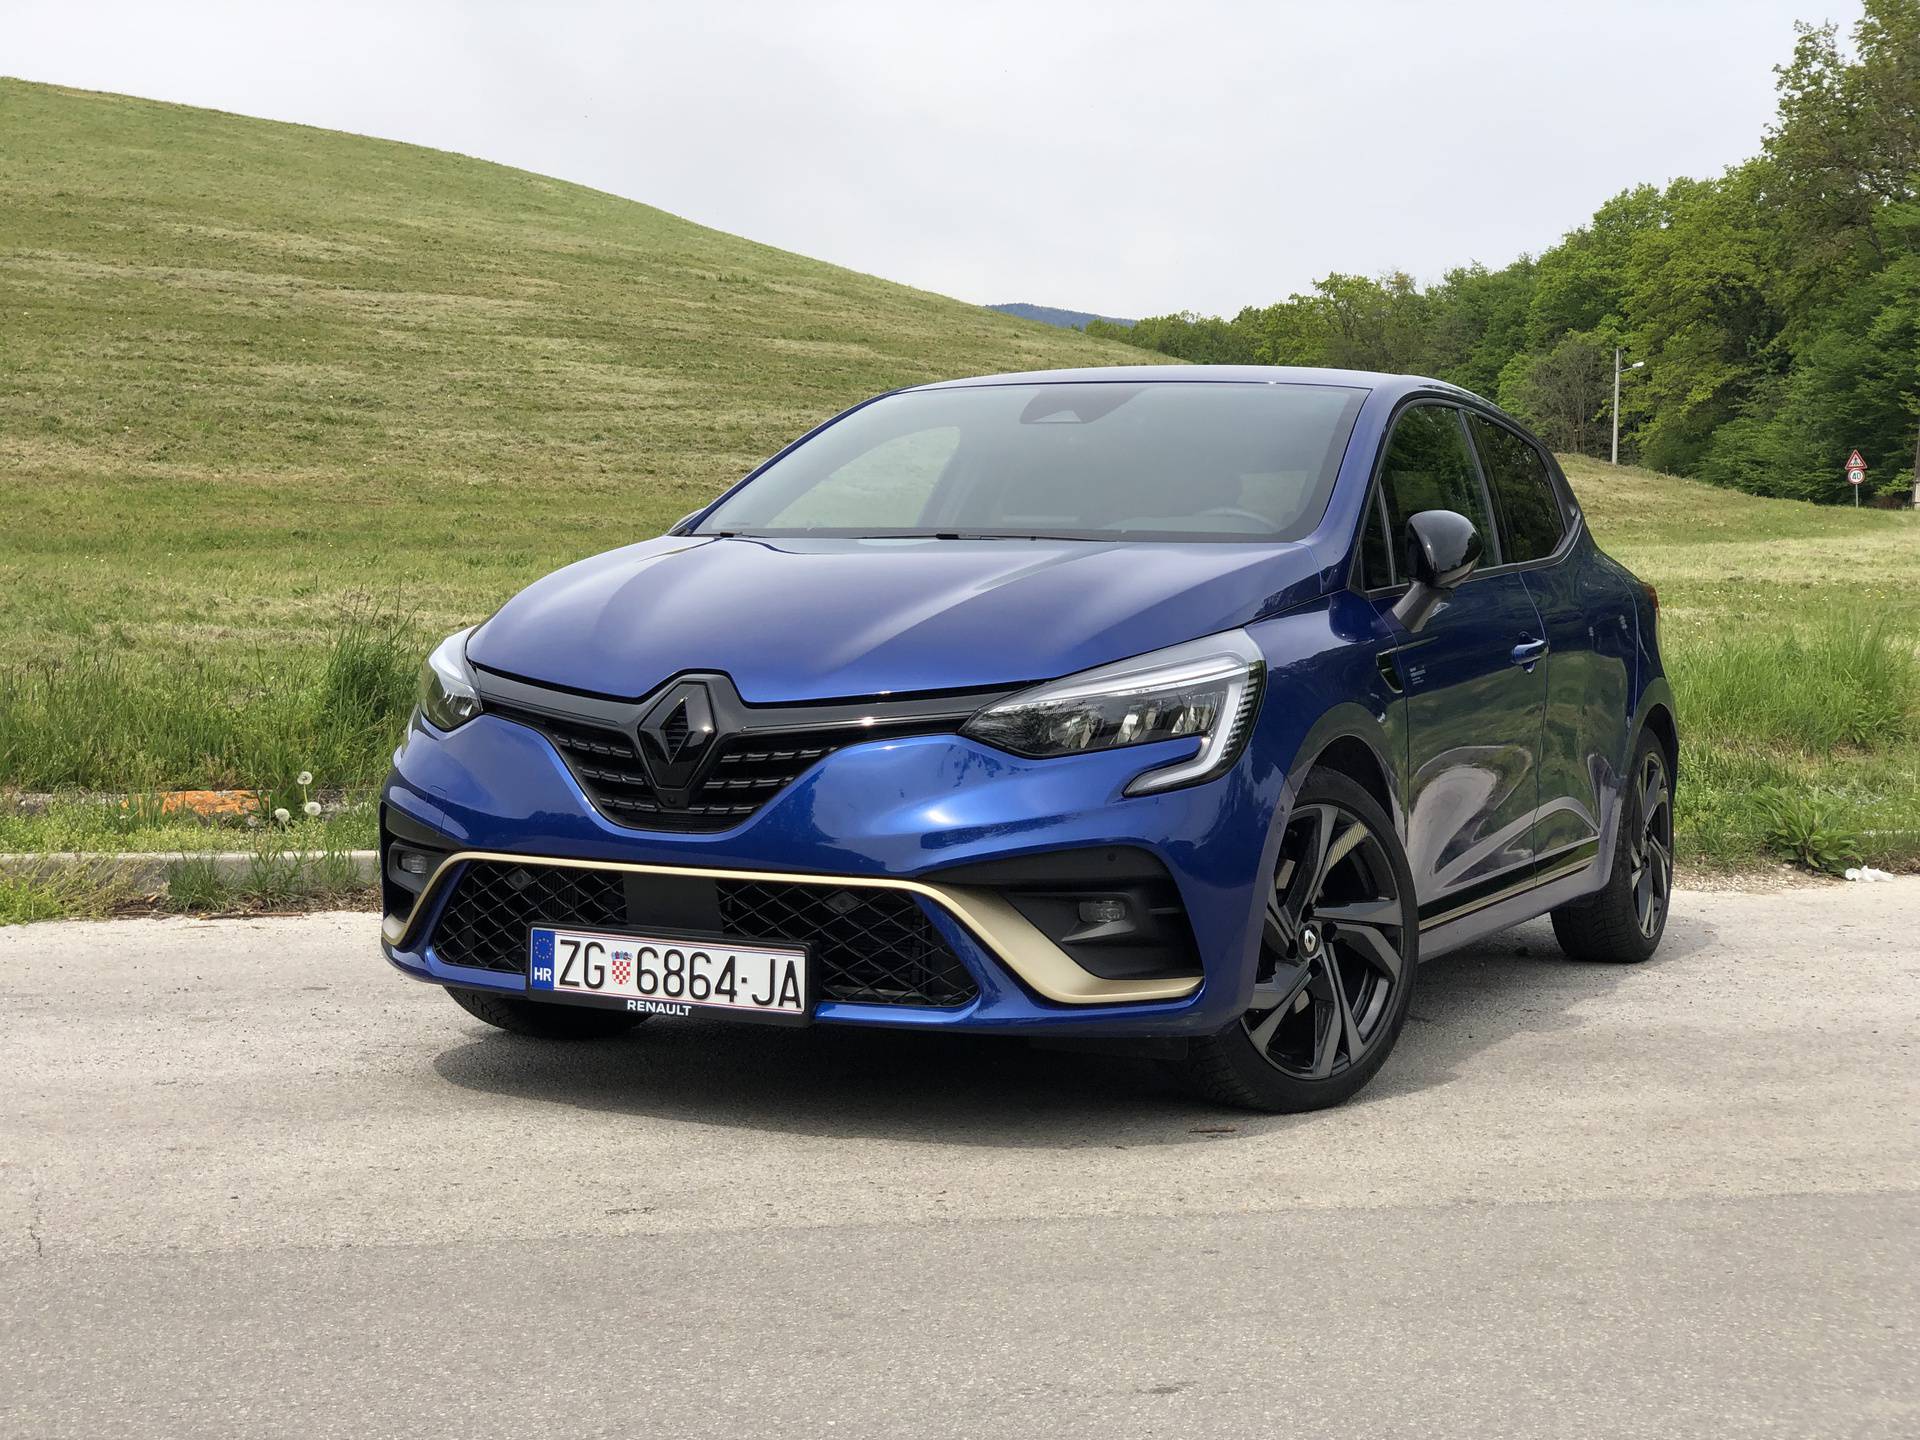 Testirali smo: Hibridni Renault Clio troši na kapaljku, može i manje od 3 litre na 100 km